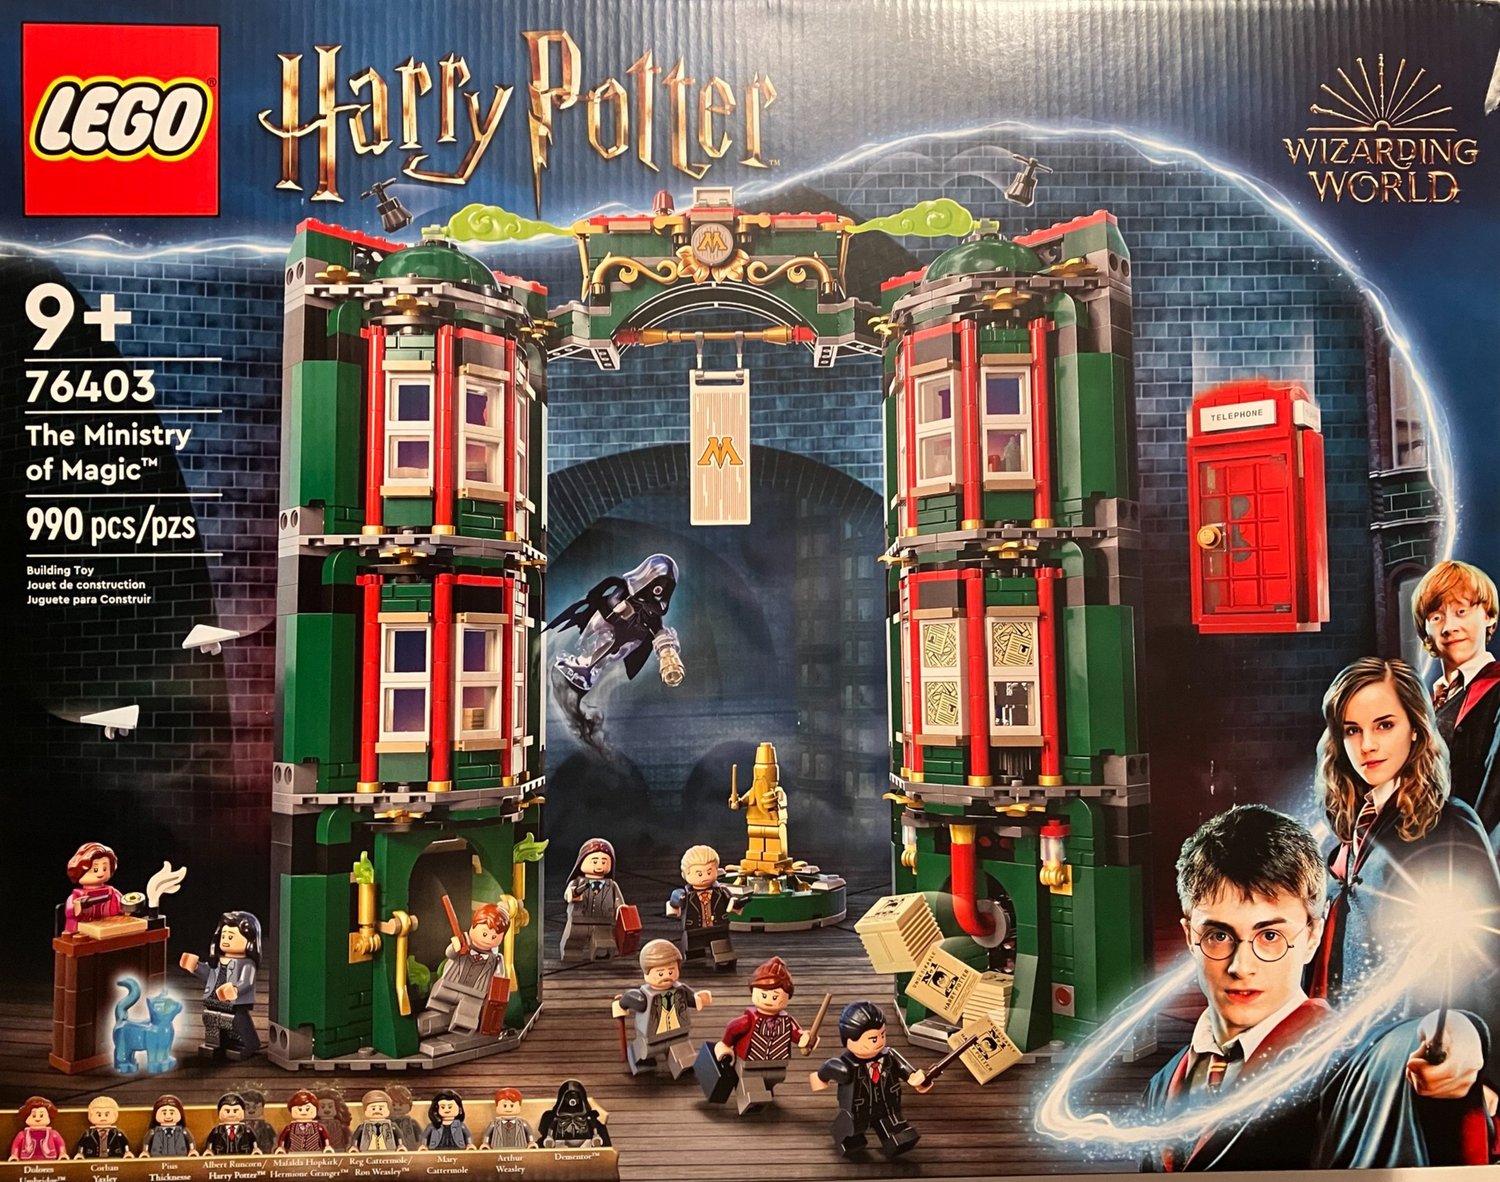 LEGO Harry Potter #01 - A Magia começa!